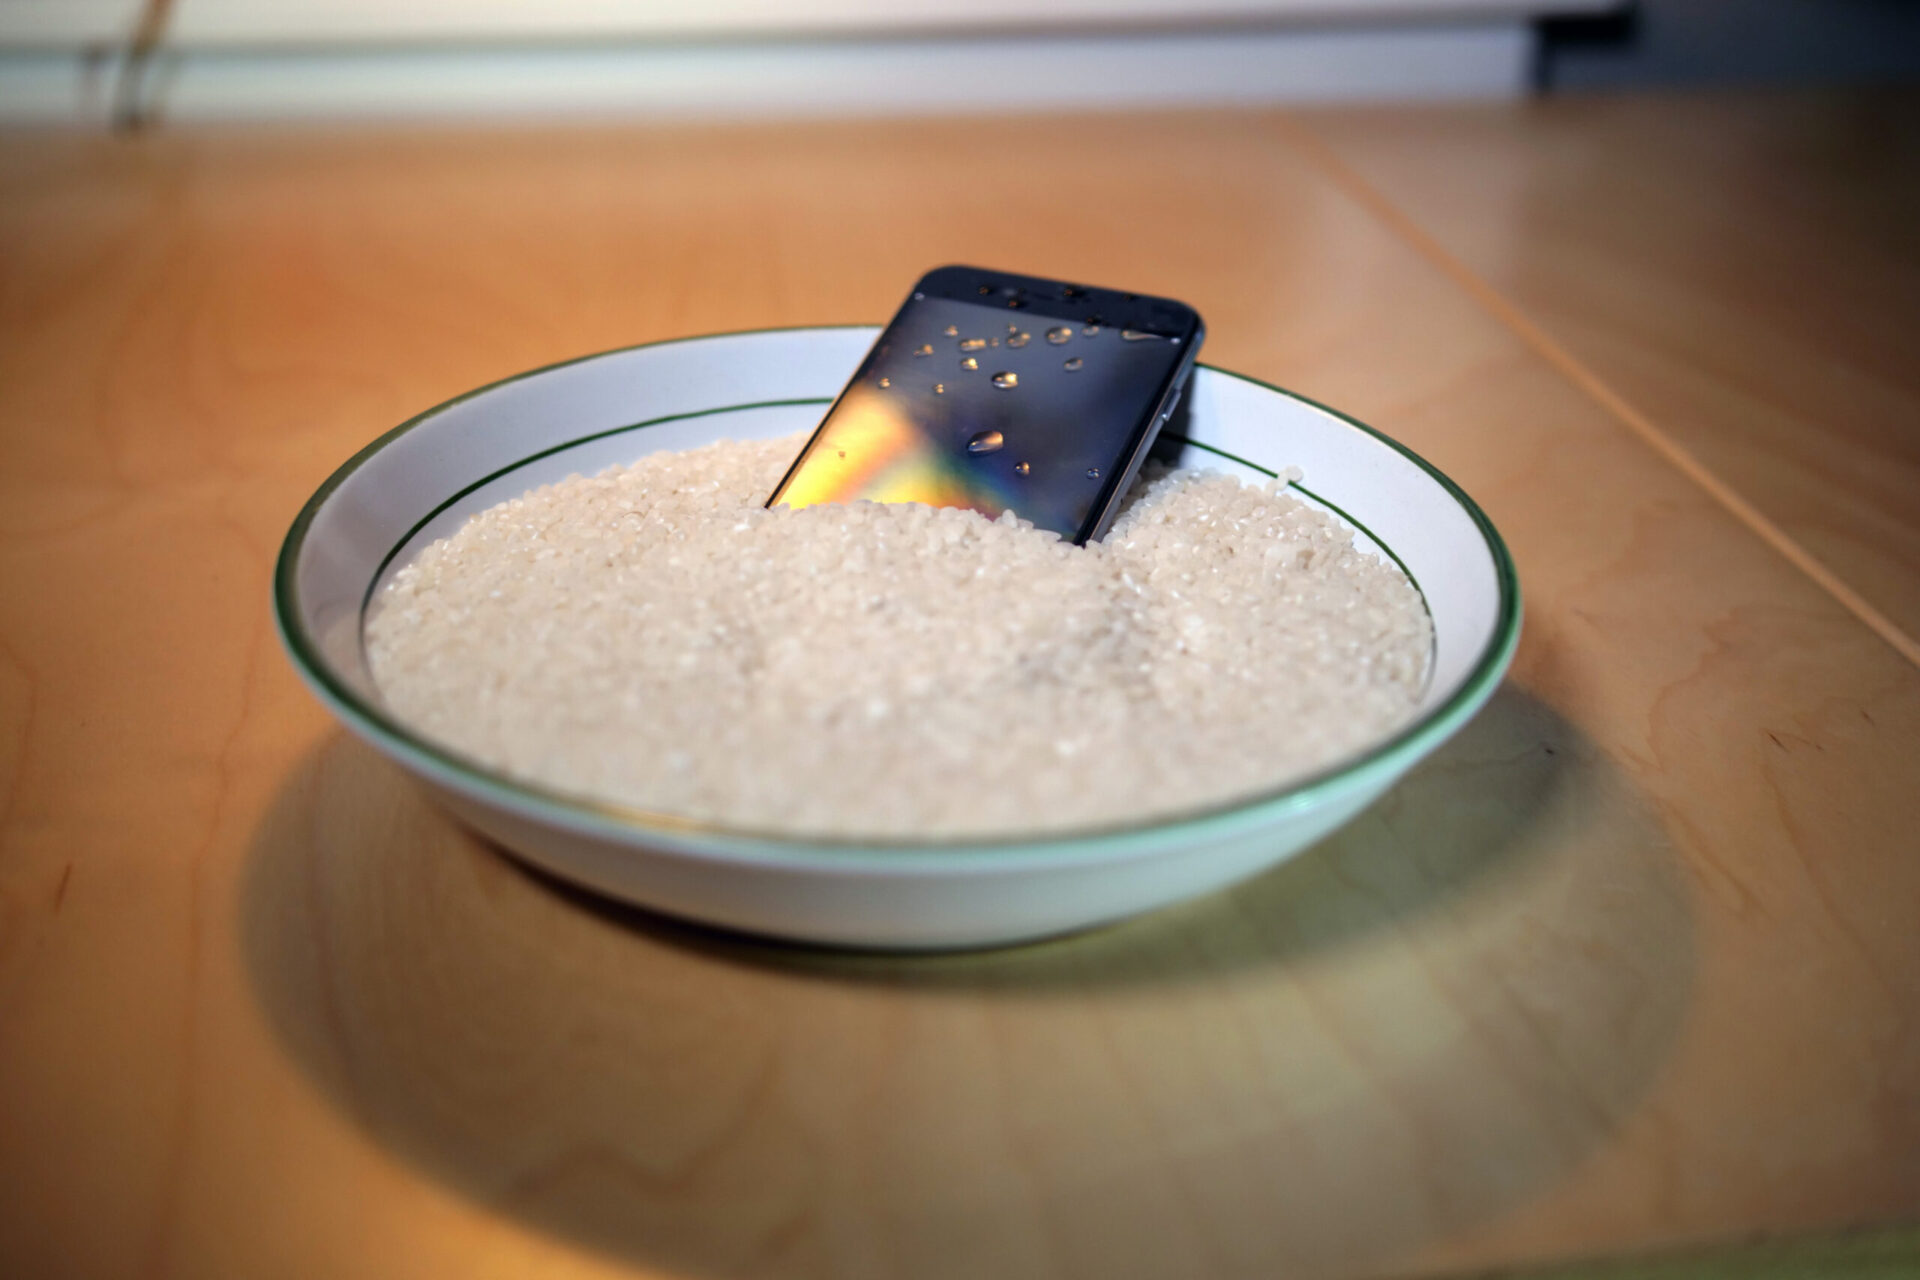 Apple: truque do iPhone no arroz não funciona; entenda